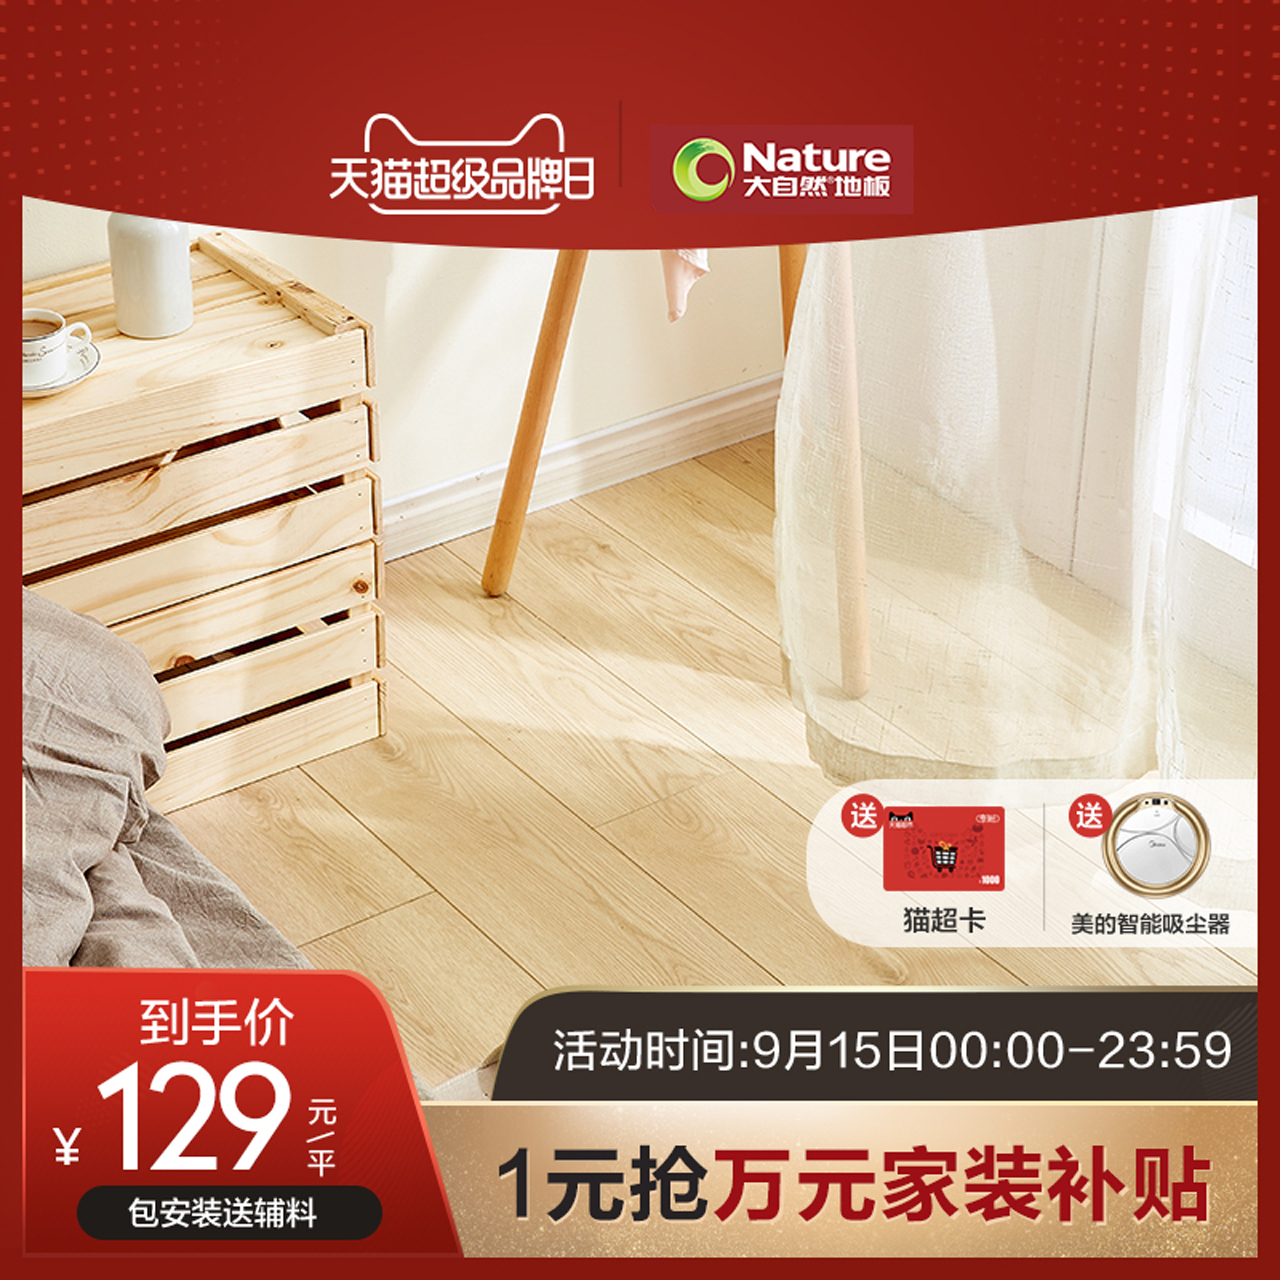 新品 包安装送踢脚线 大自然地板强化复合地板客厅家用木地板悦享